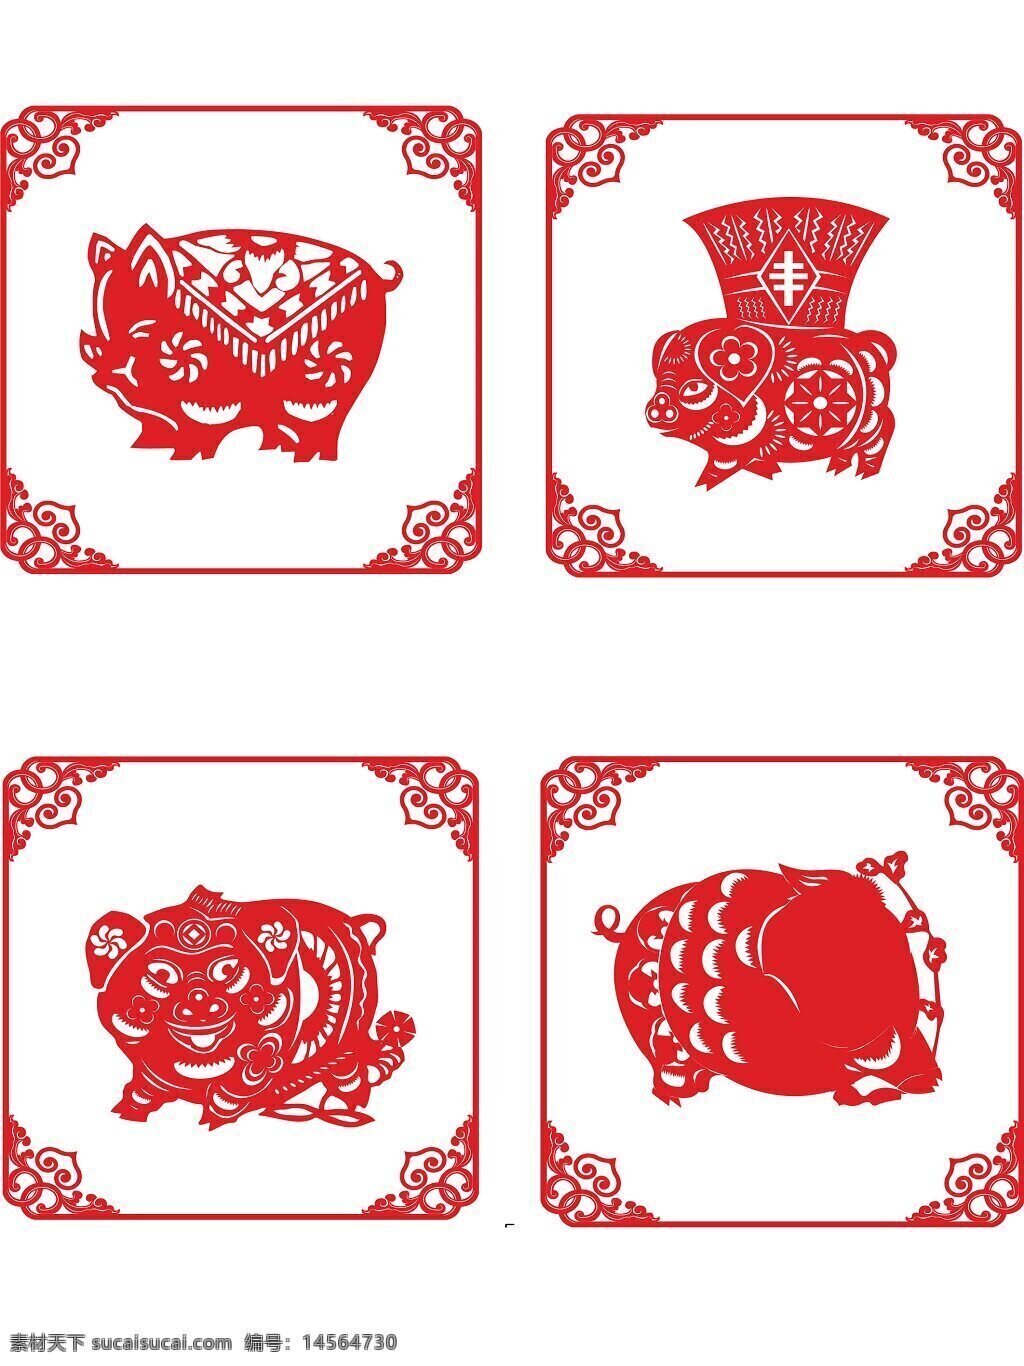 传统剪纸 传统窗花 剪影图片 贴图贴画 传统装饰 民间剪纸艺术 窗花剪纸 喜庆元素 中国传统元素